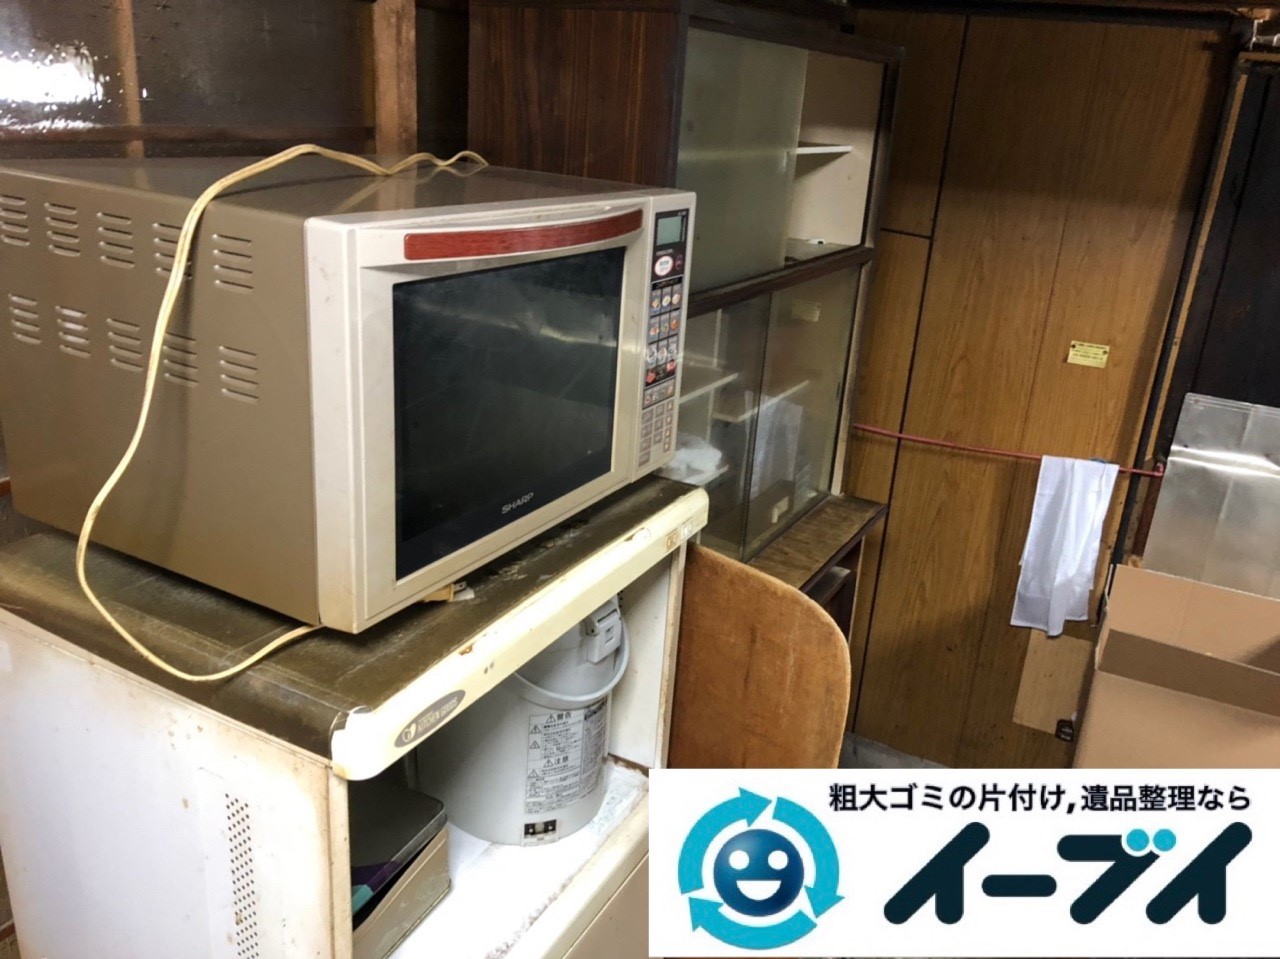 2019年6月26日大阪府大阪市都島区で食器棚の大型家具やお庭の不用品回収。写真4